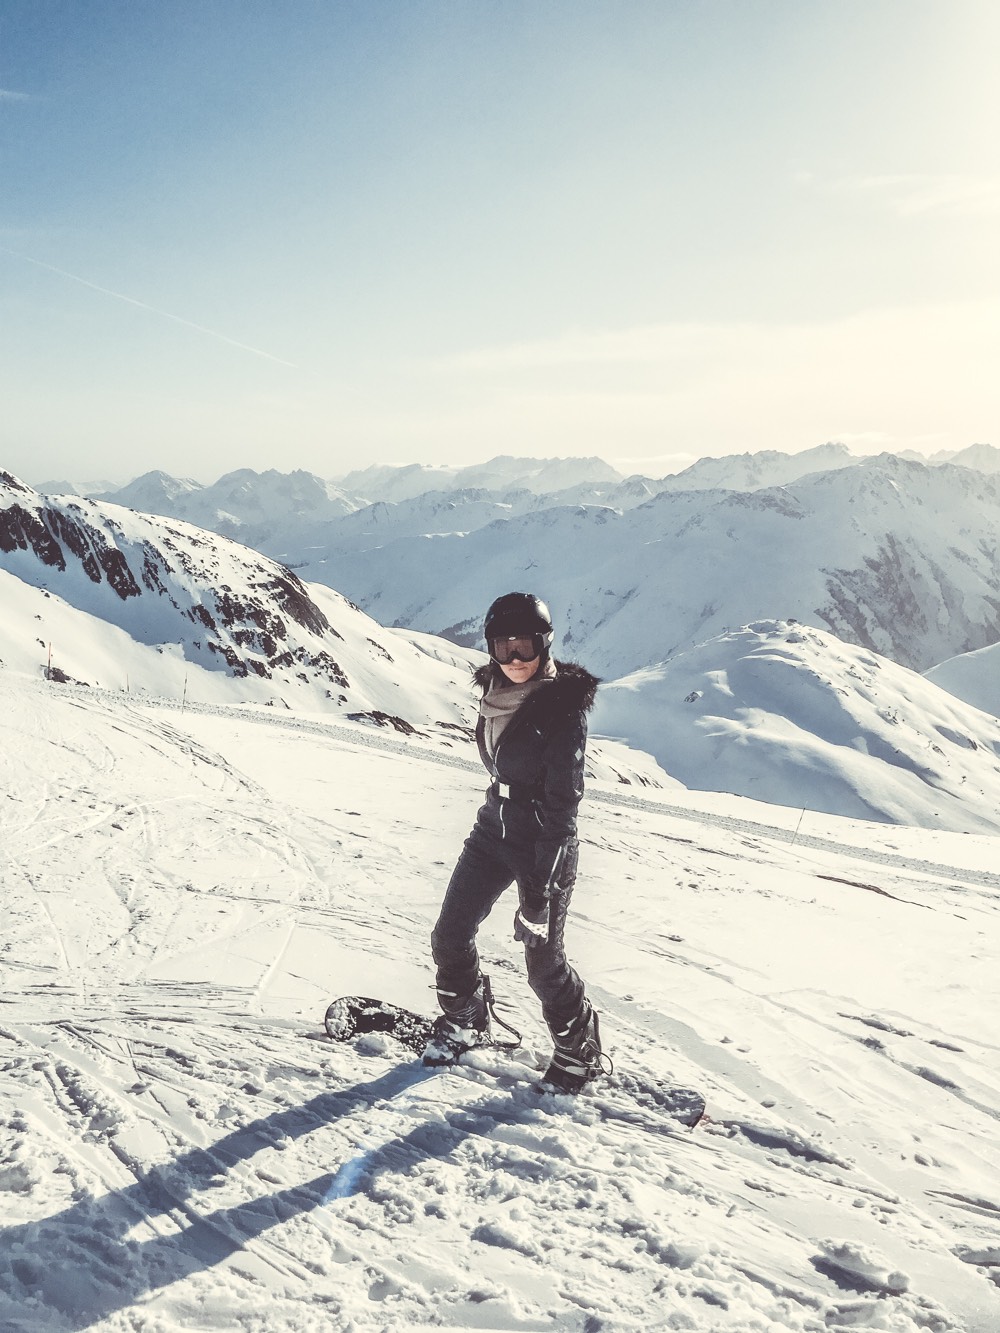 Skiing in switzerland, swiss alps, winter sport